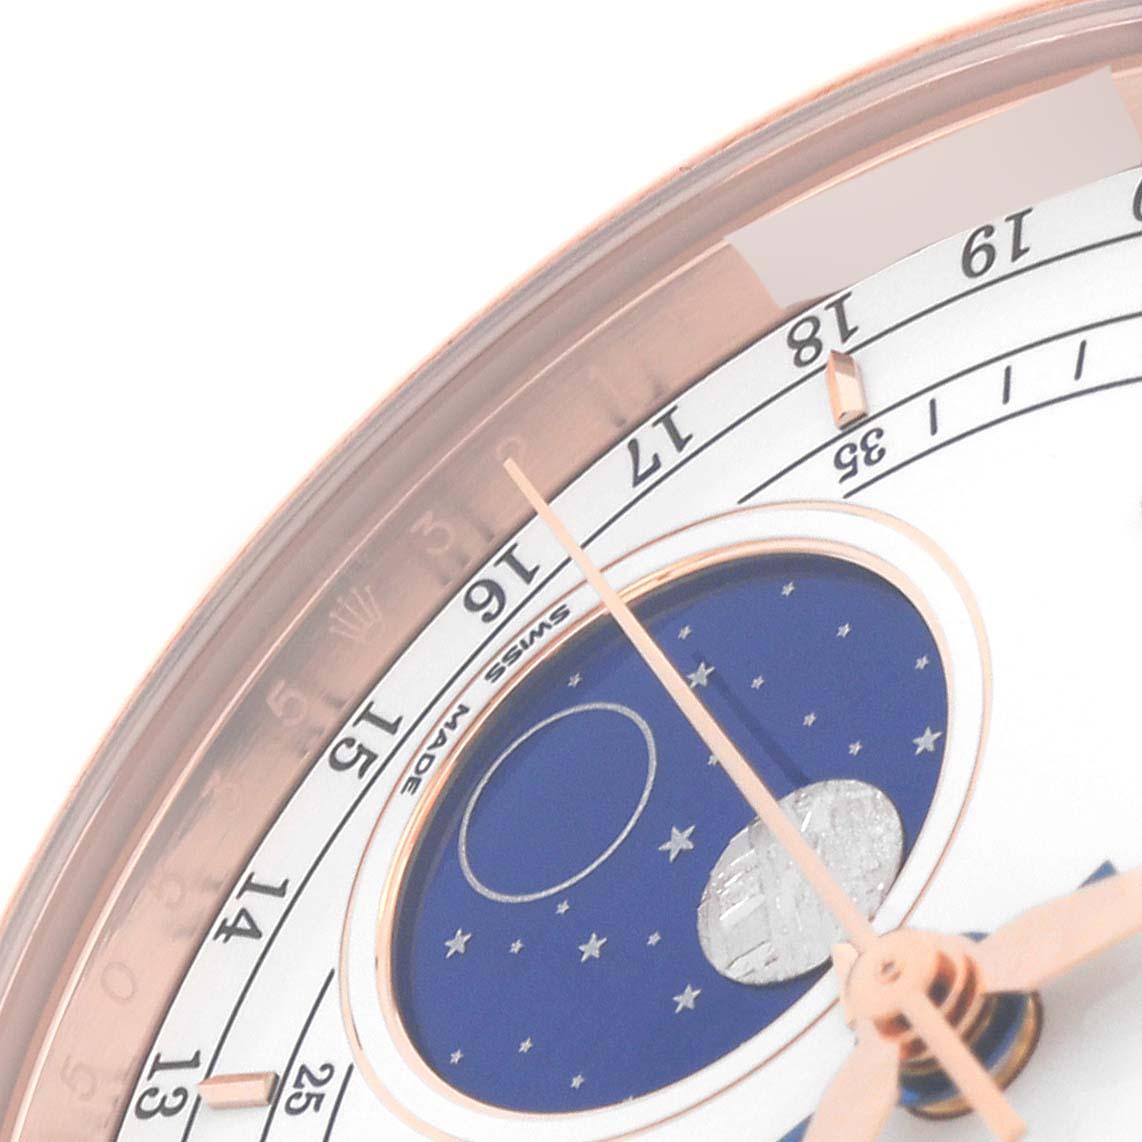 Rolex Cellini Moonphase Weißes Zifferblatt Rose Gold Herrenuhr 50535. Automatisches Uhrwerk mit Selbstaufzug. Offiziell zertifizierter Schweizer Chronometer (COSC). Paramagnetische blaue Parachrom-Spirale. Bidirektionaler Automatikaufzug über